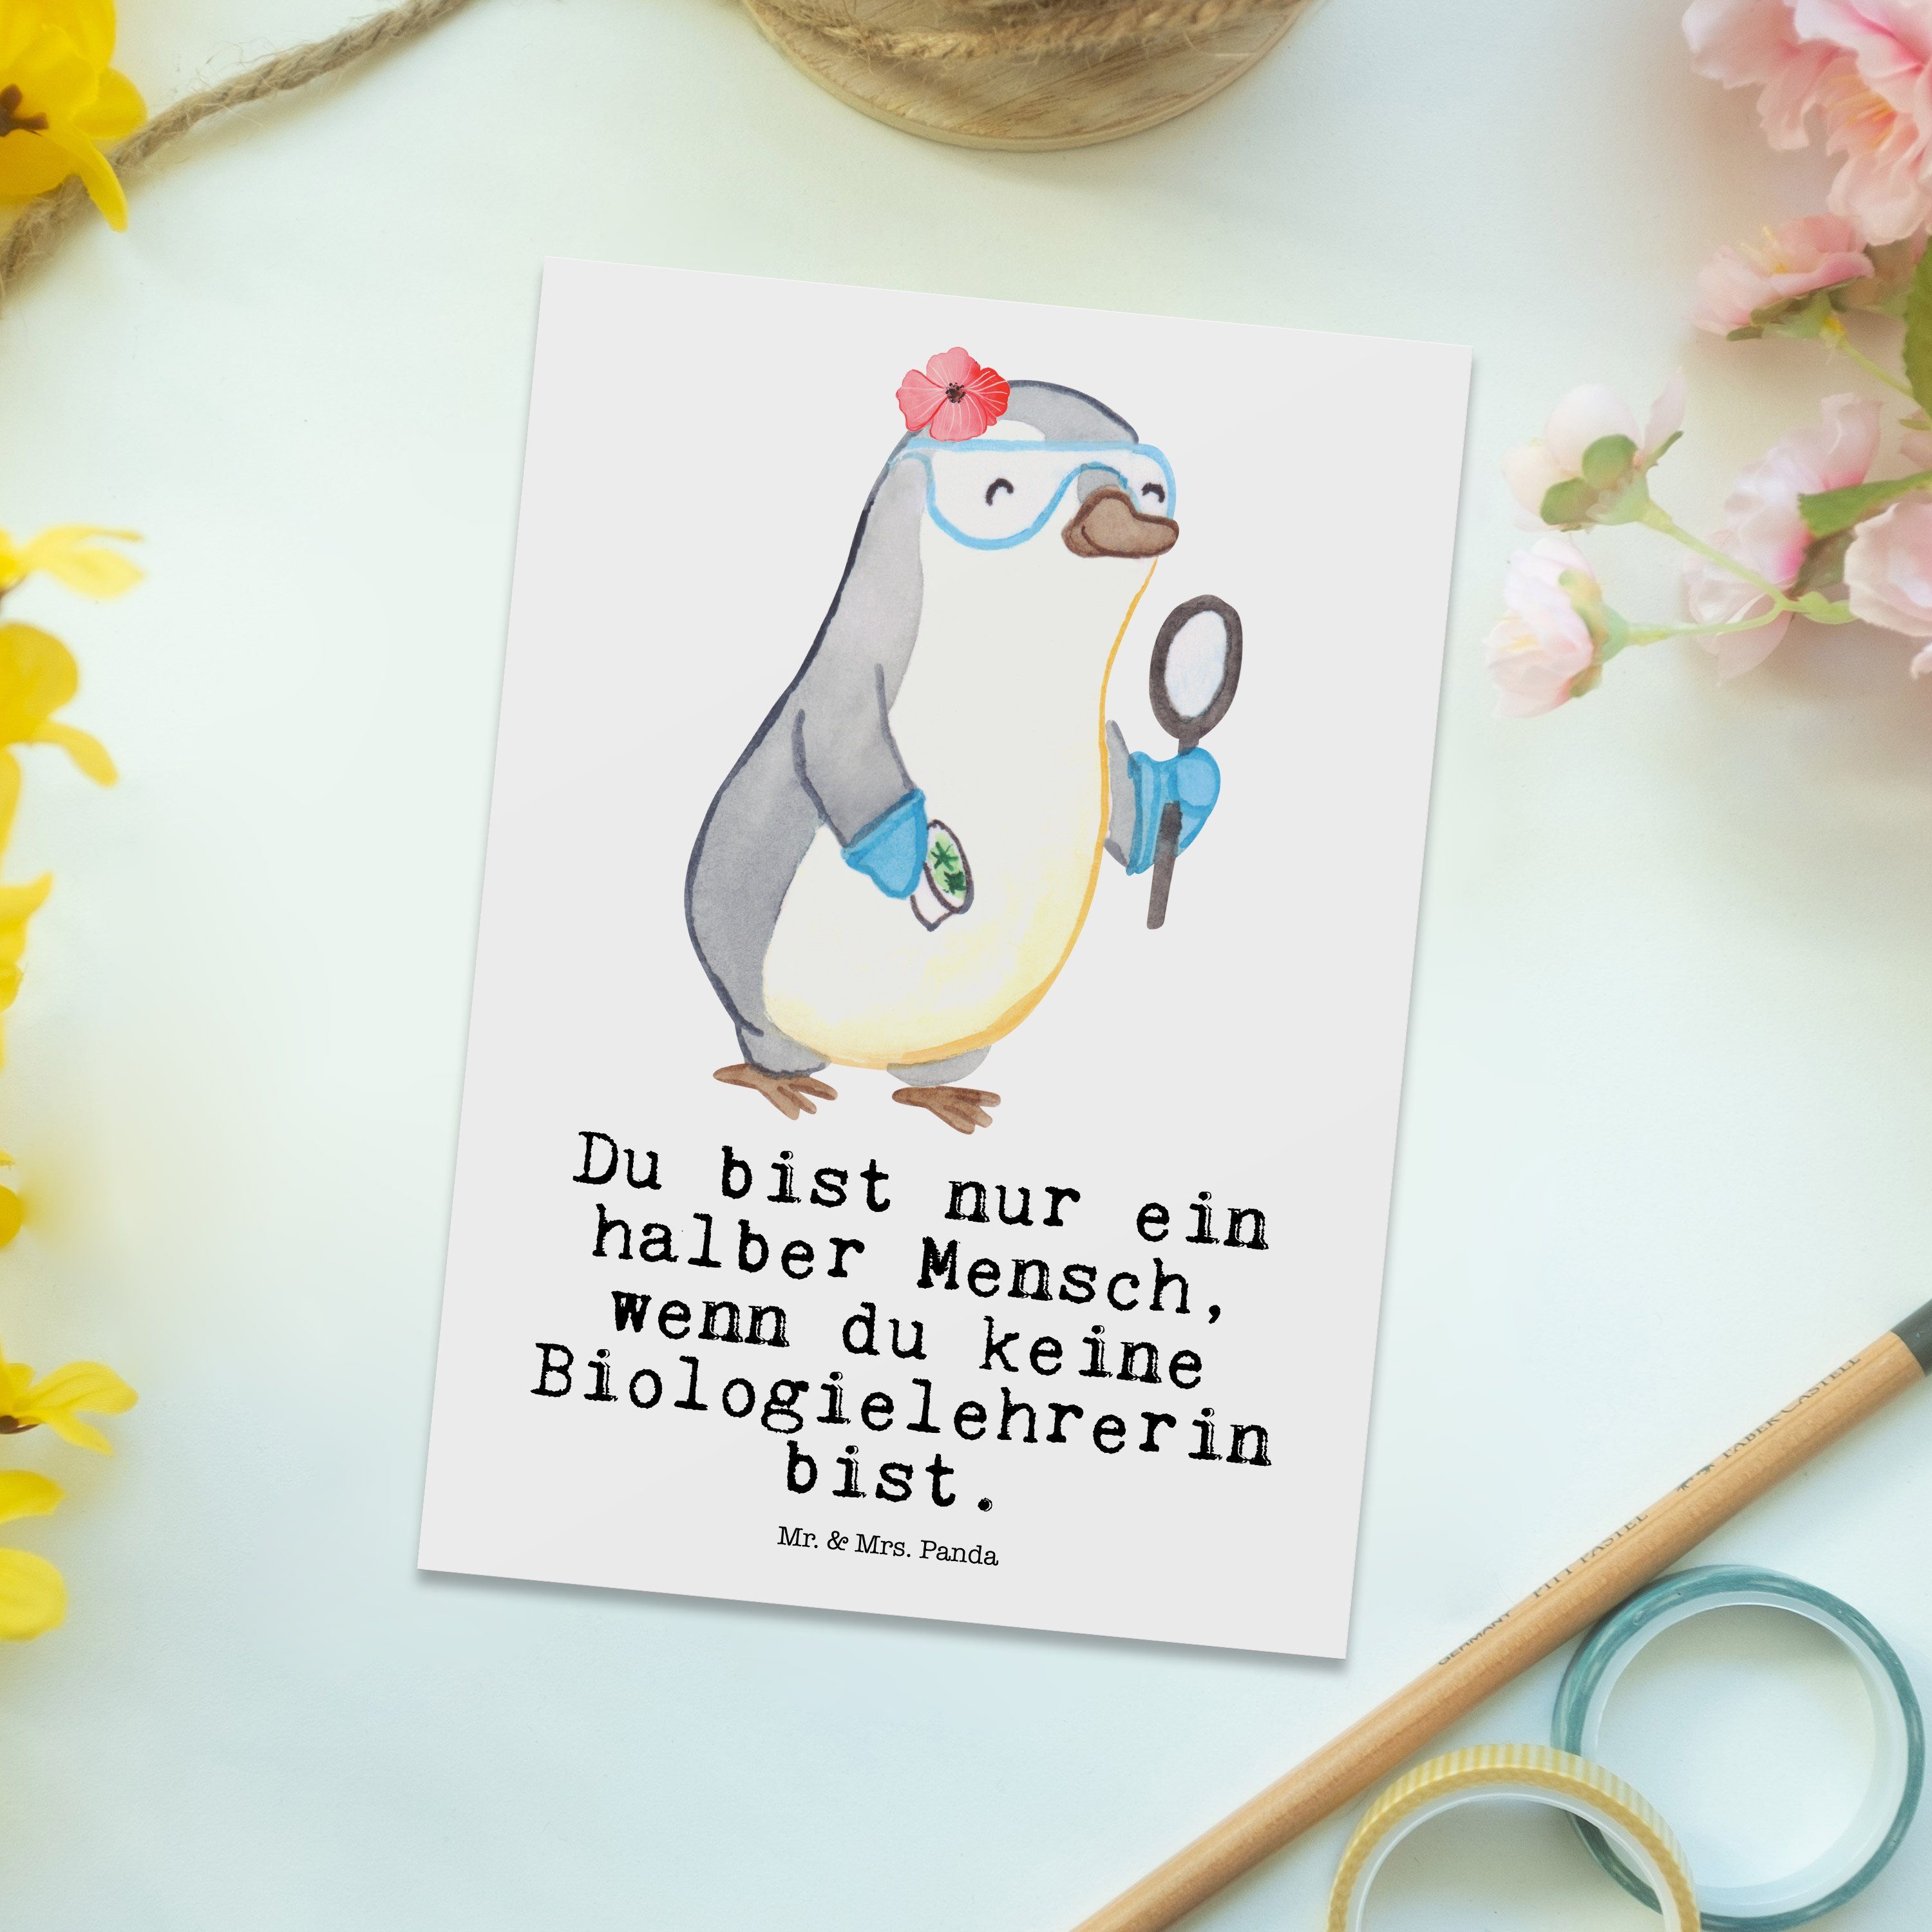 Mrs. & Einladung, Danke - Mr. Postkarte Weiß Schule, Panda Herz Geschenk, mit Biologielehrerin -